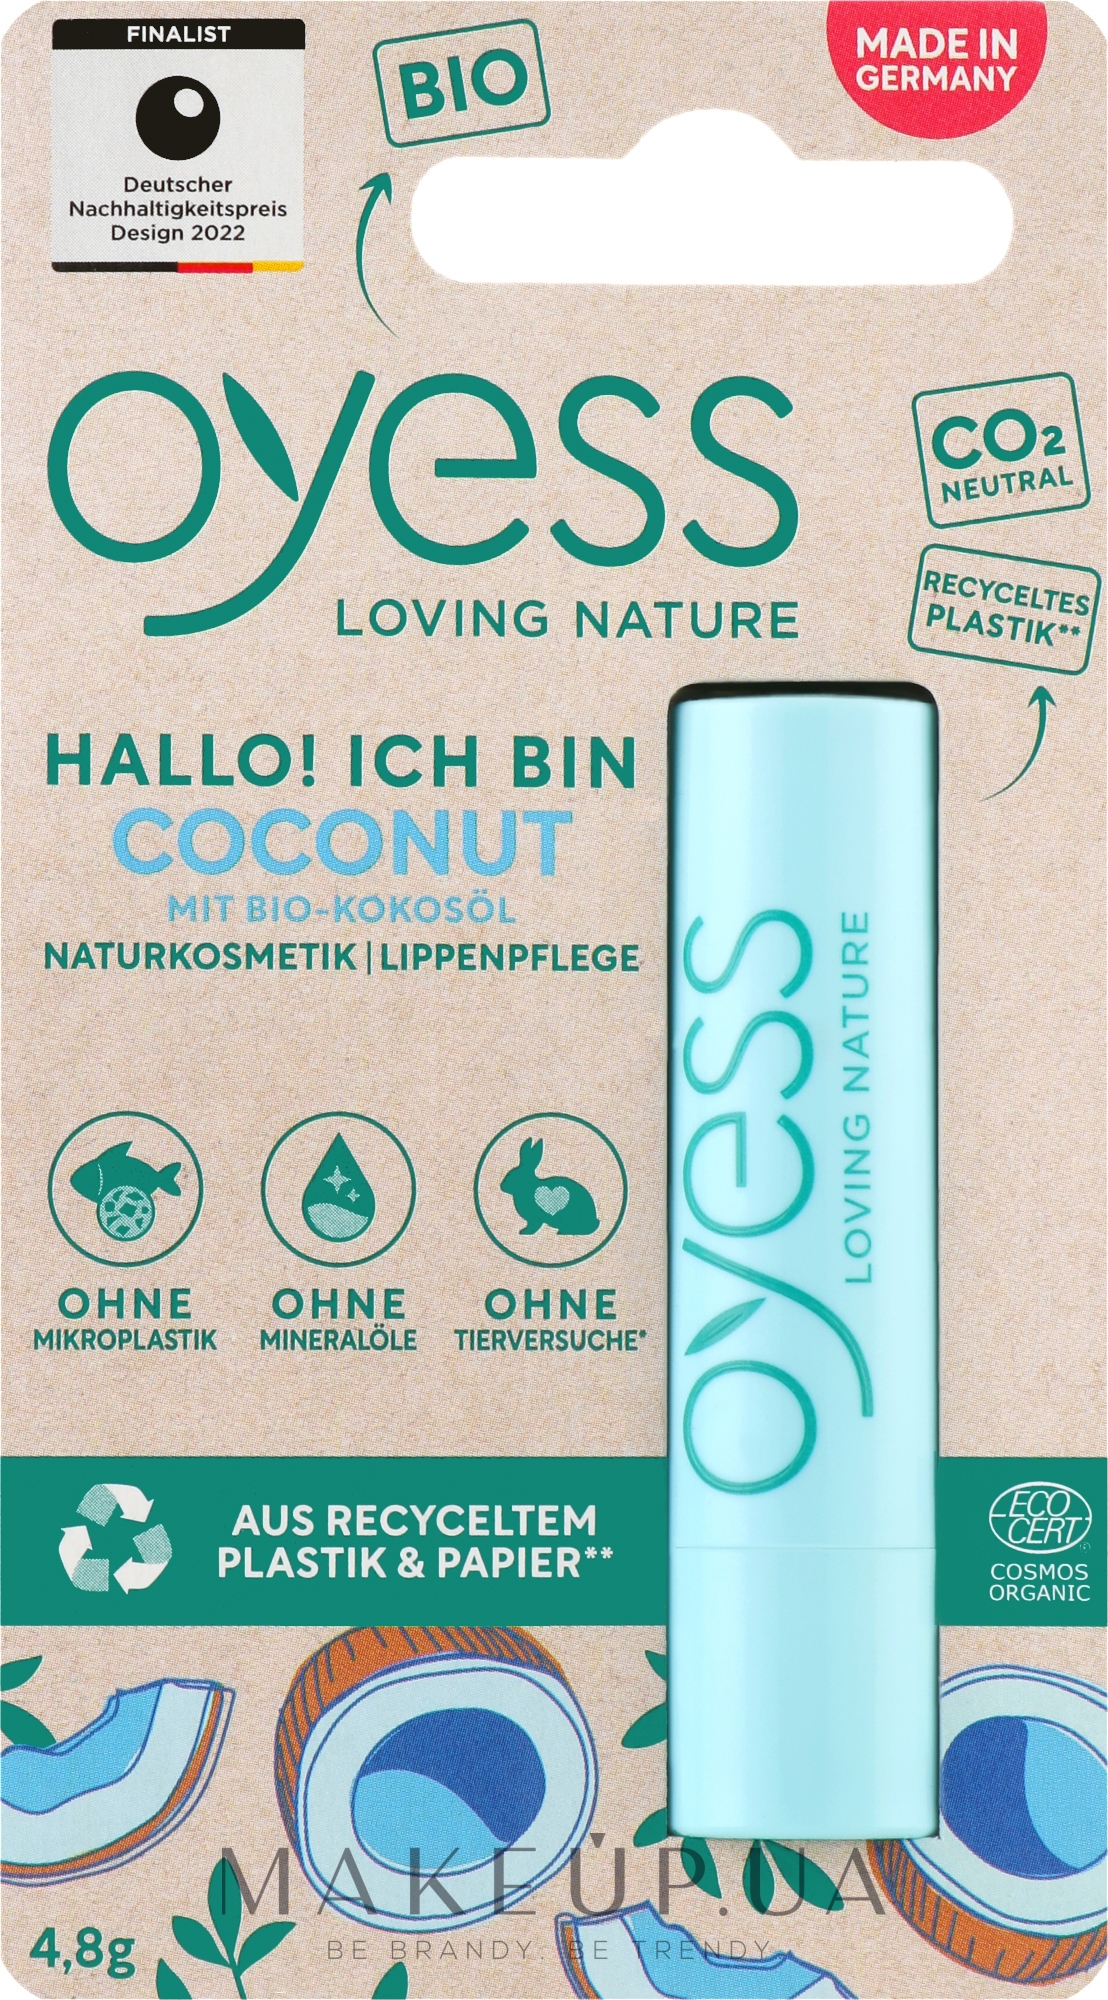 Гигиеническая помада-бальзам для губ "Coconut" - Oyess Lippenpflege  — фото 4.8g